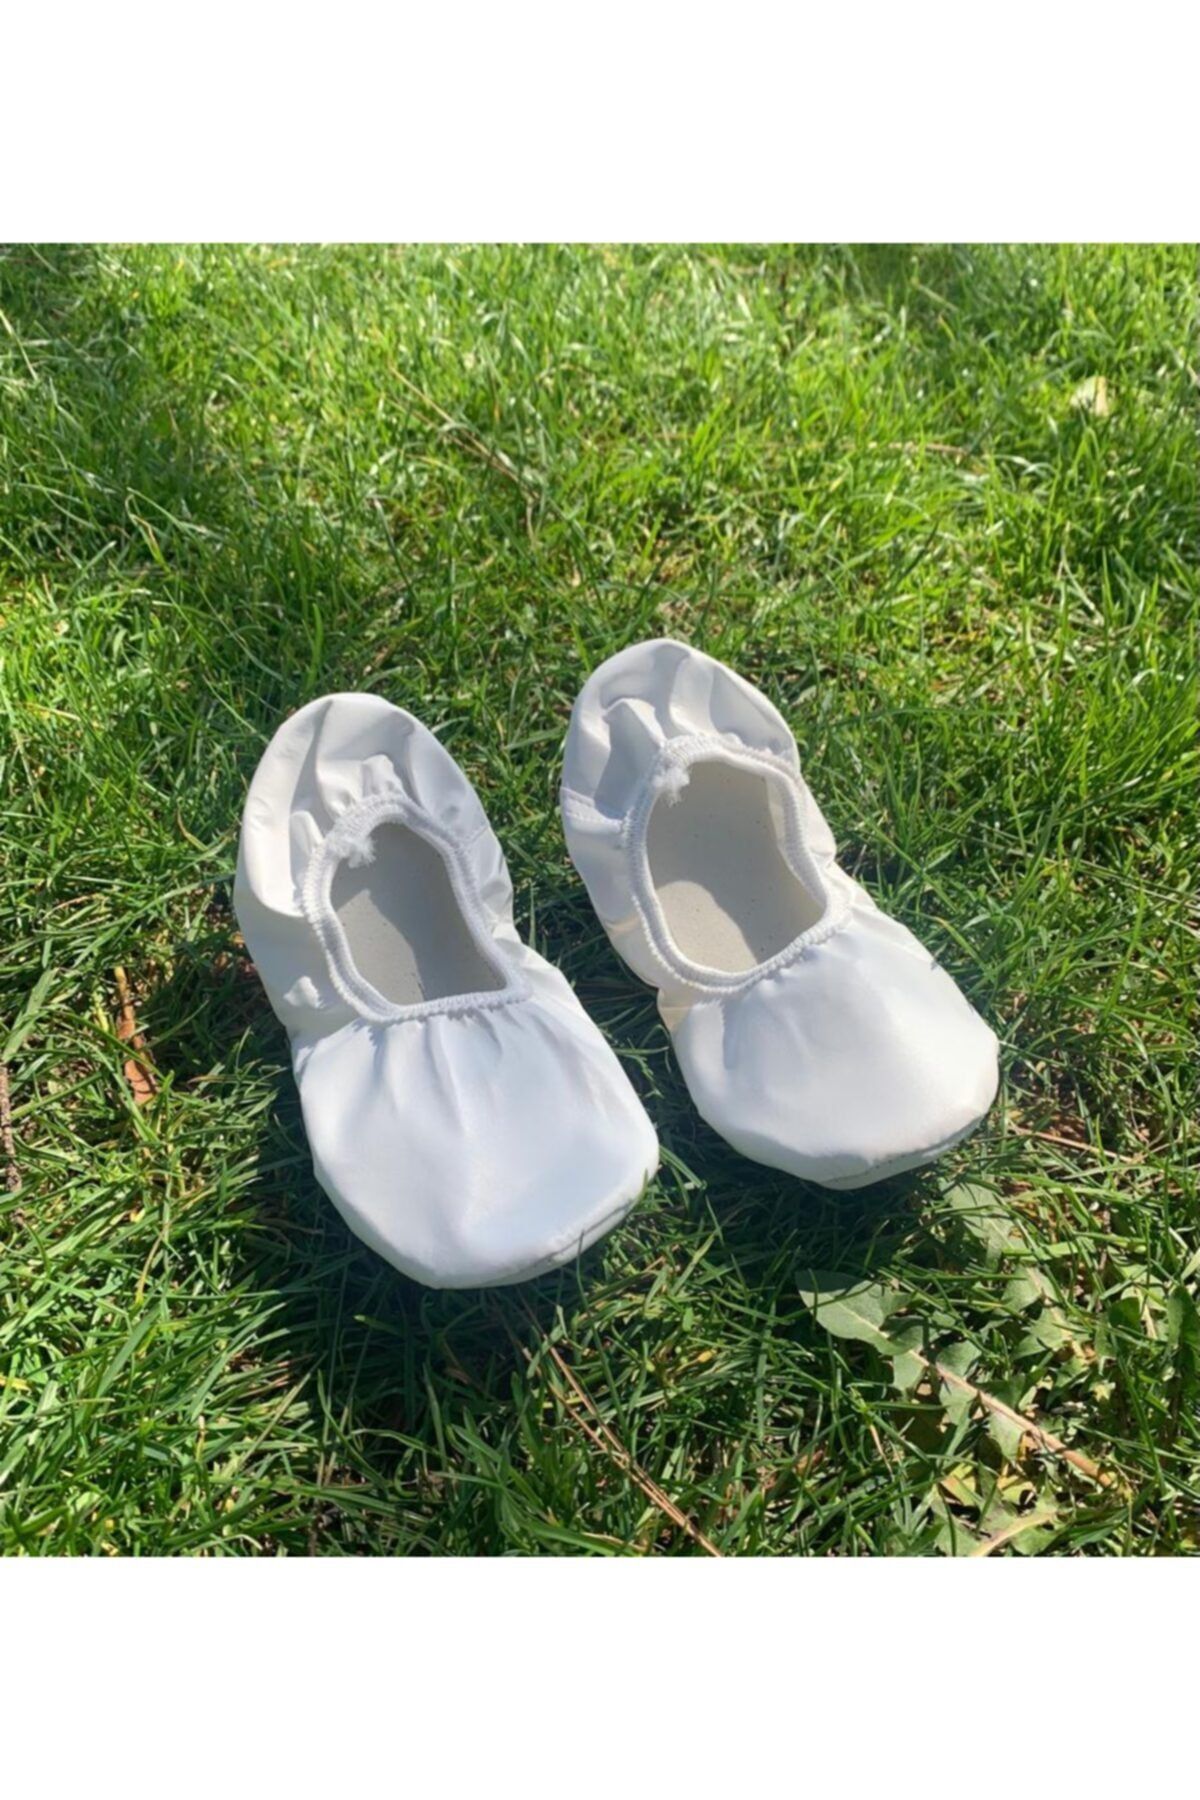 Aksulu Unisex Beyaz Gösteri Ayakkabısı Pisi Pisi Babet Ayakkabı